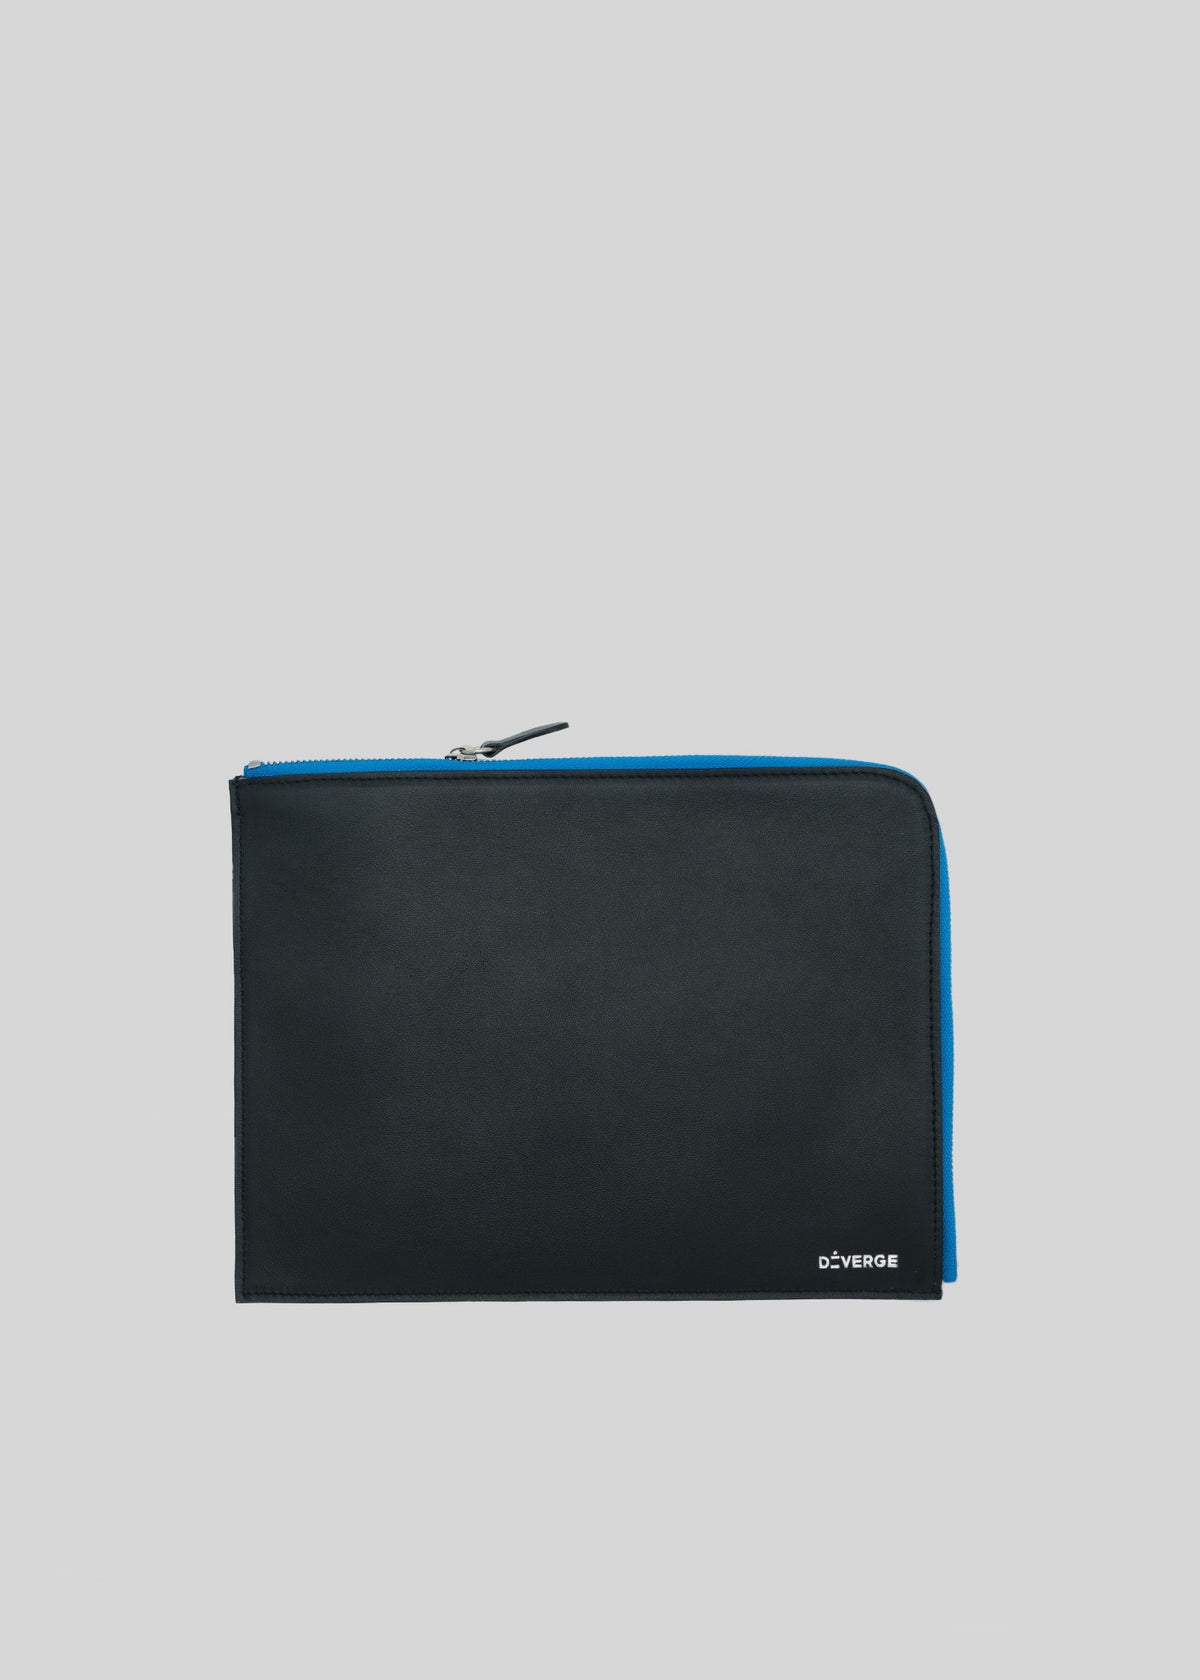 Eine schwarze M Leather Pouch Black w/ Blue Brieftasche mit blauem Reißverschluss, isoliert auf weißem Hintergrund.